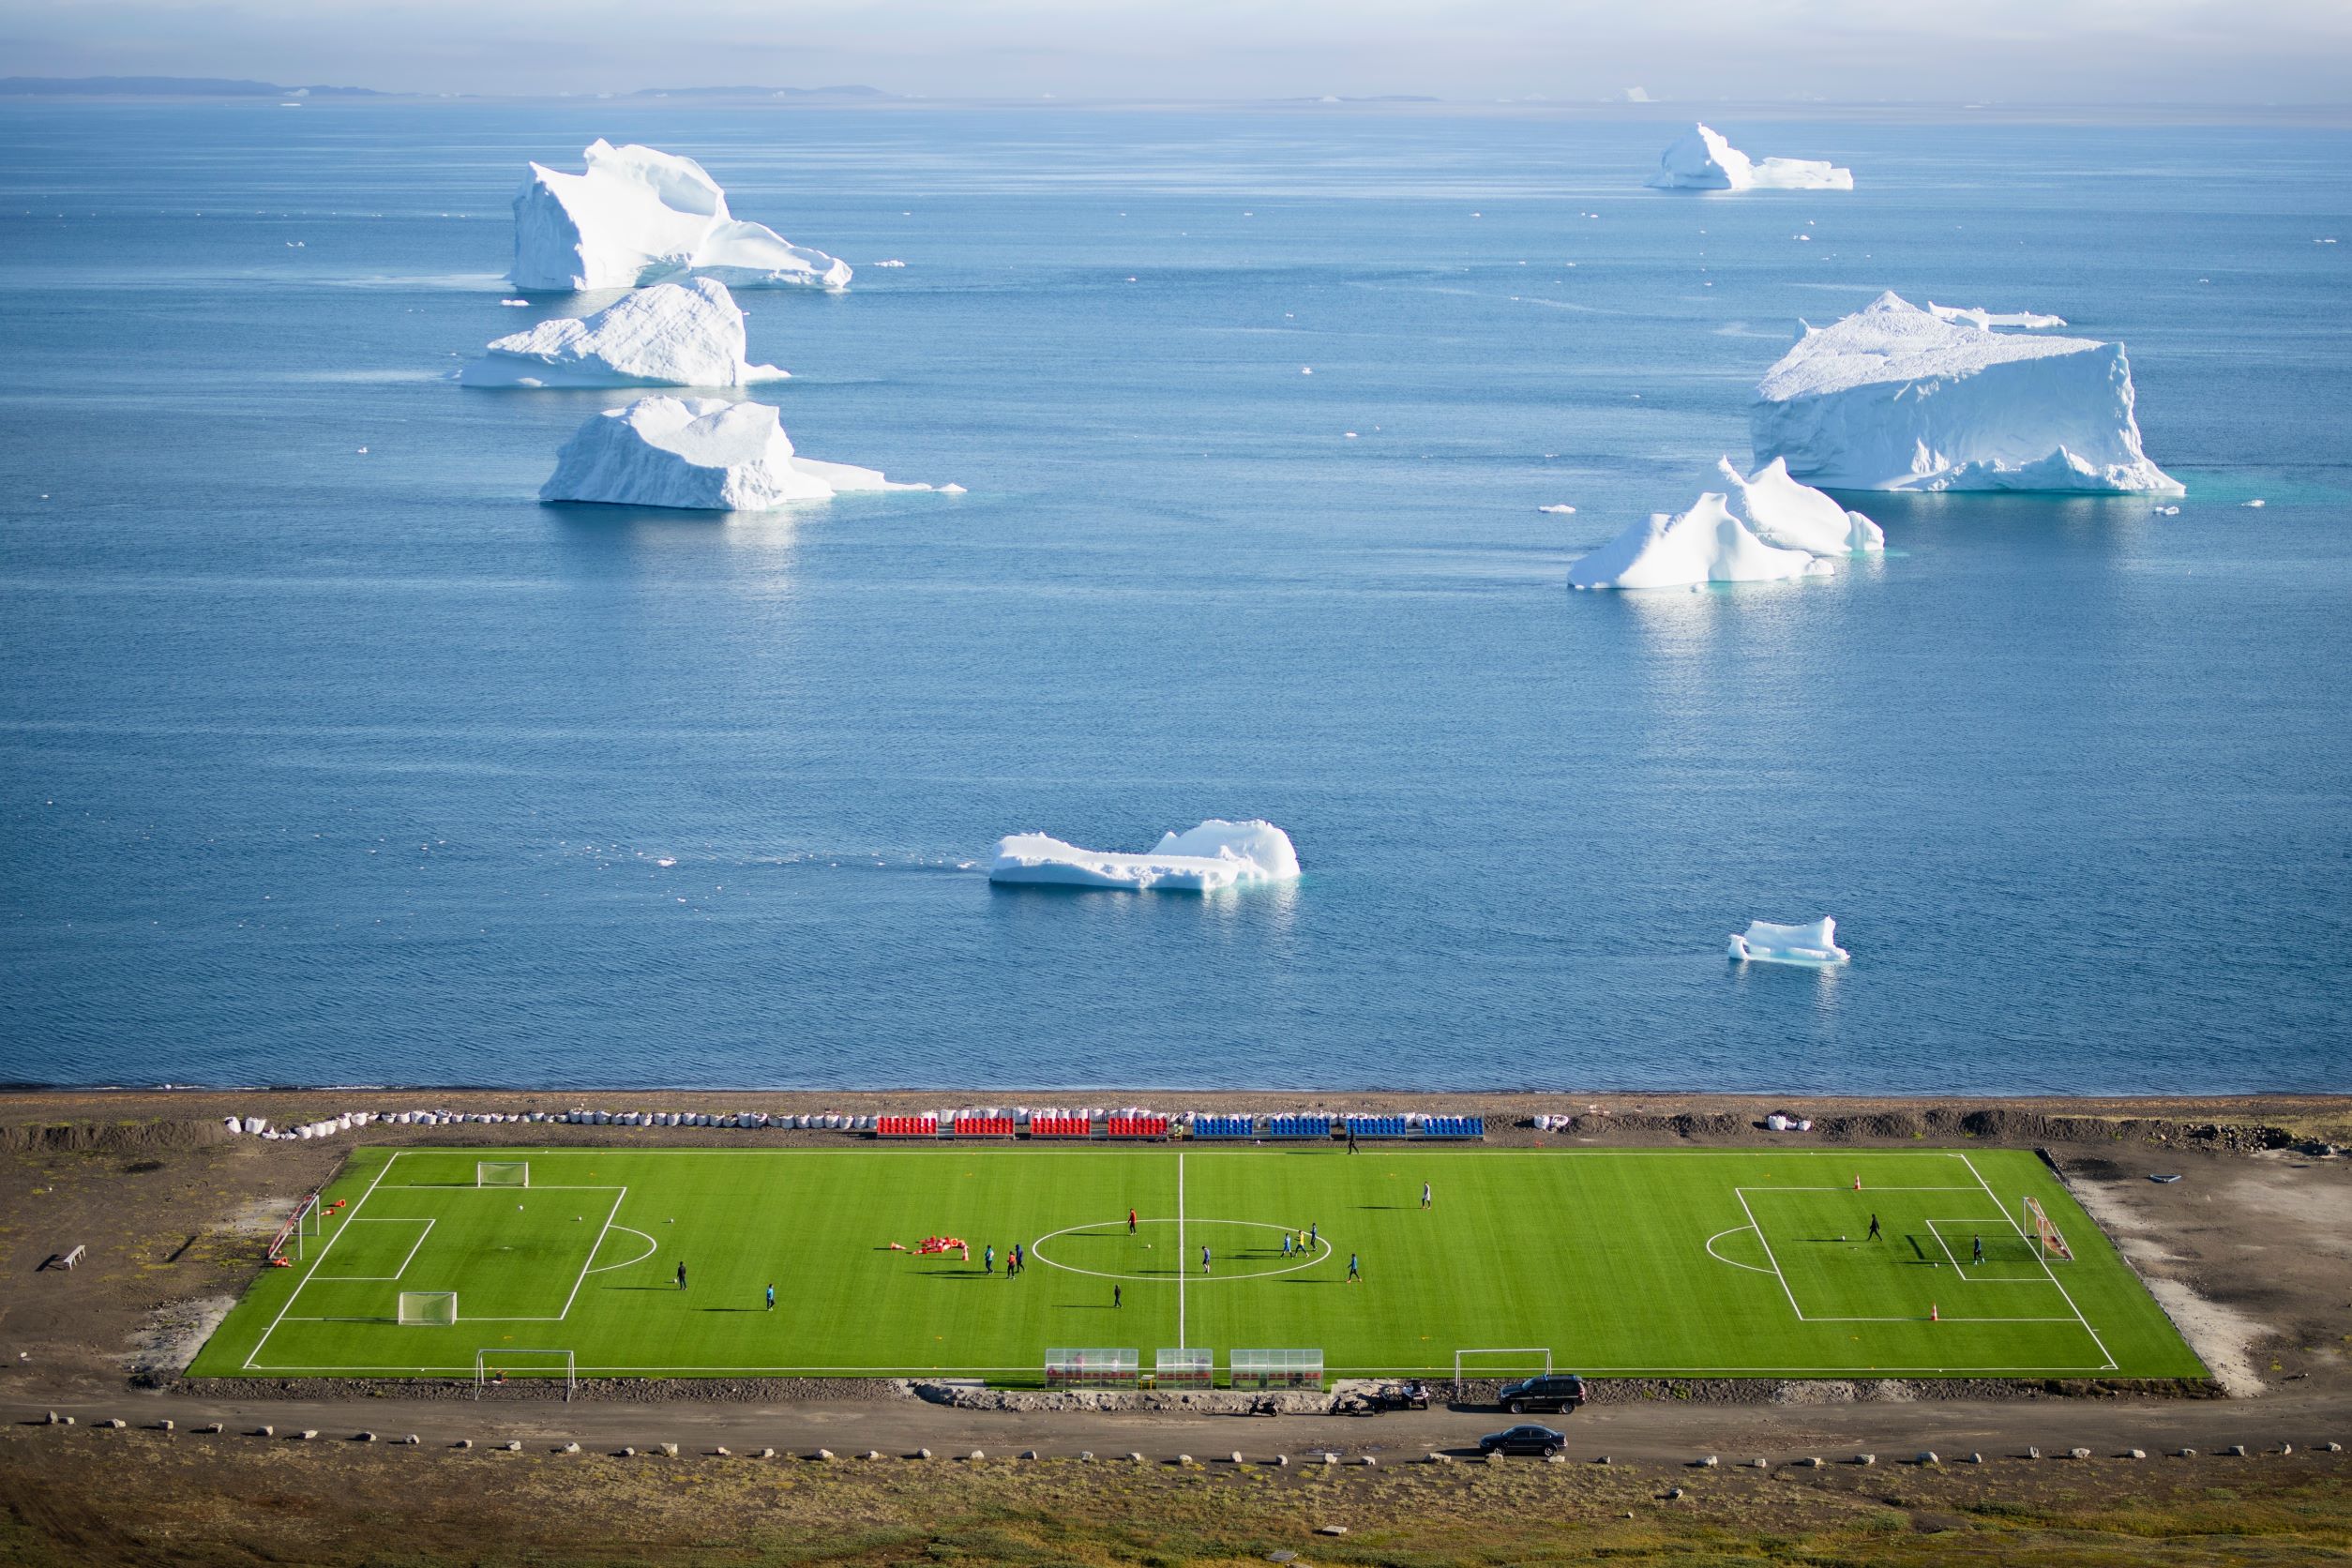 an aerial view of the football field at Qeqertarsuaq